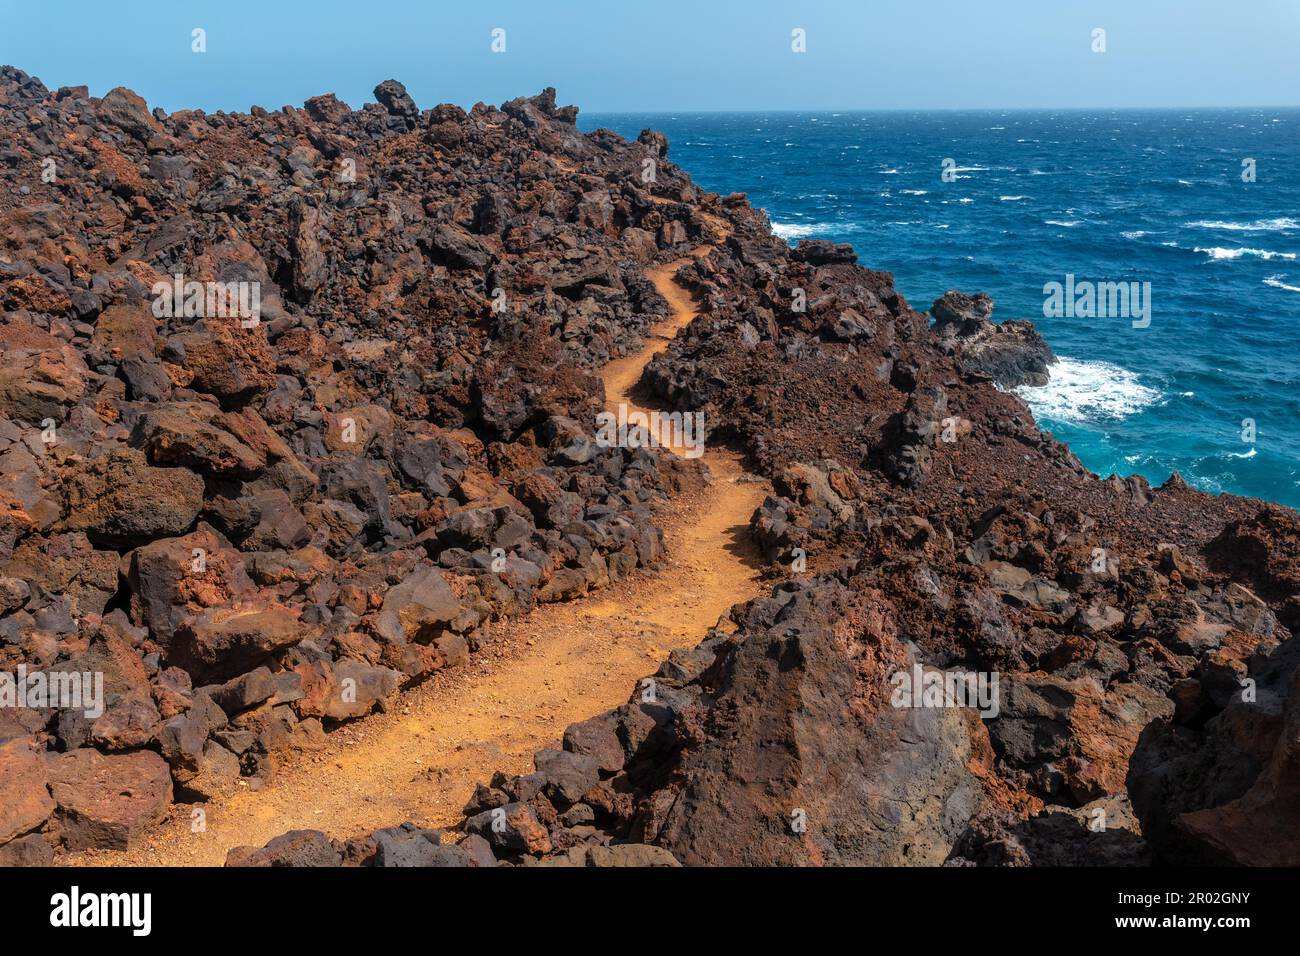 Sentier volcanique dans le village de Tamaduste sur la côte de l'île d'El Hierro, îles Canaries, Espagne Banque D'Images